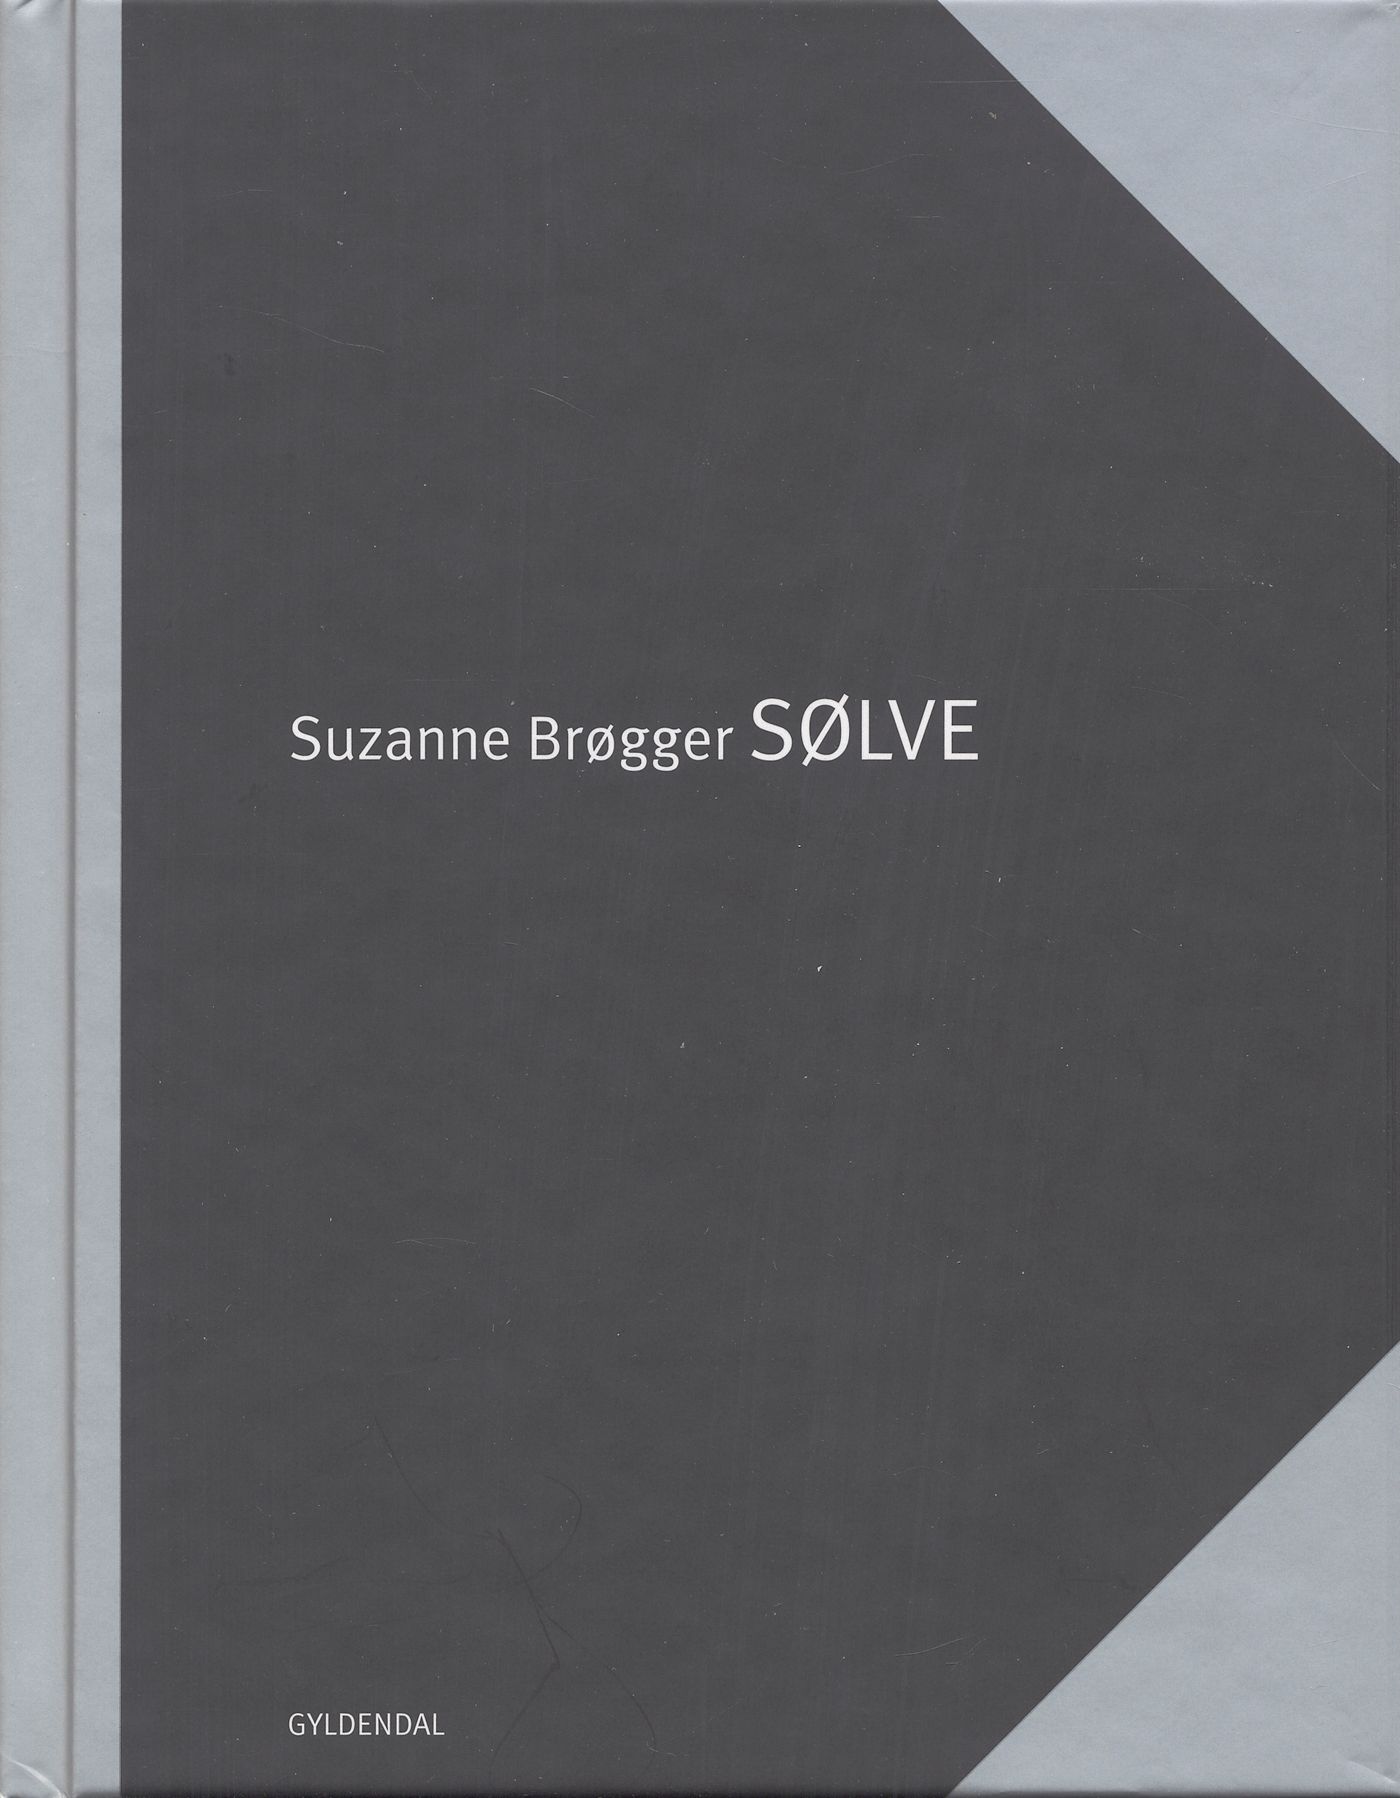 Sølve, eBook by Suzanne Brøgger